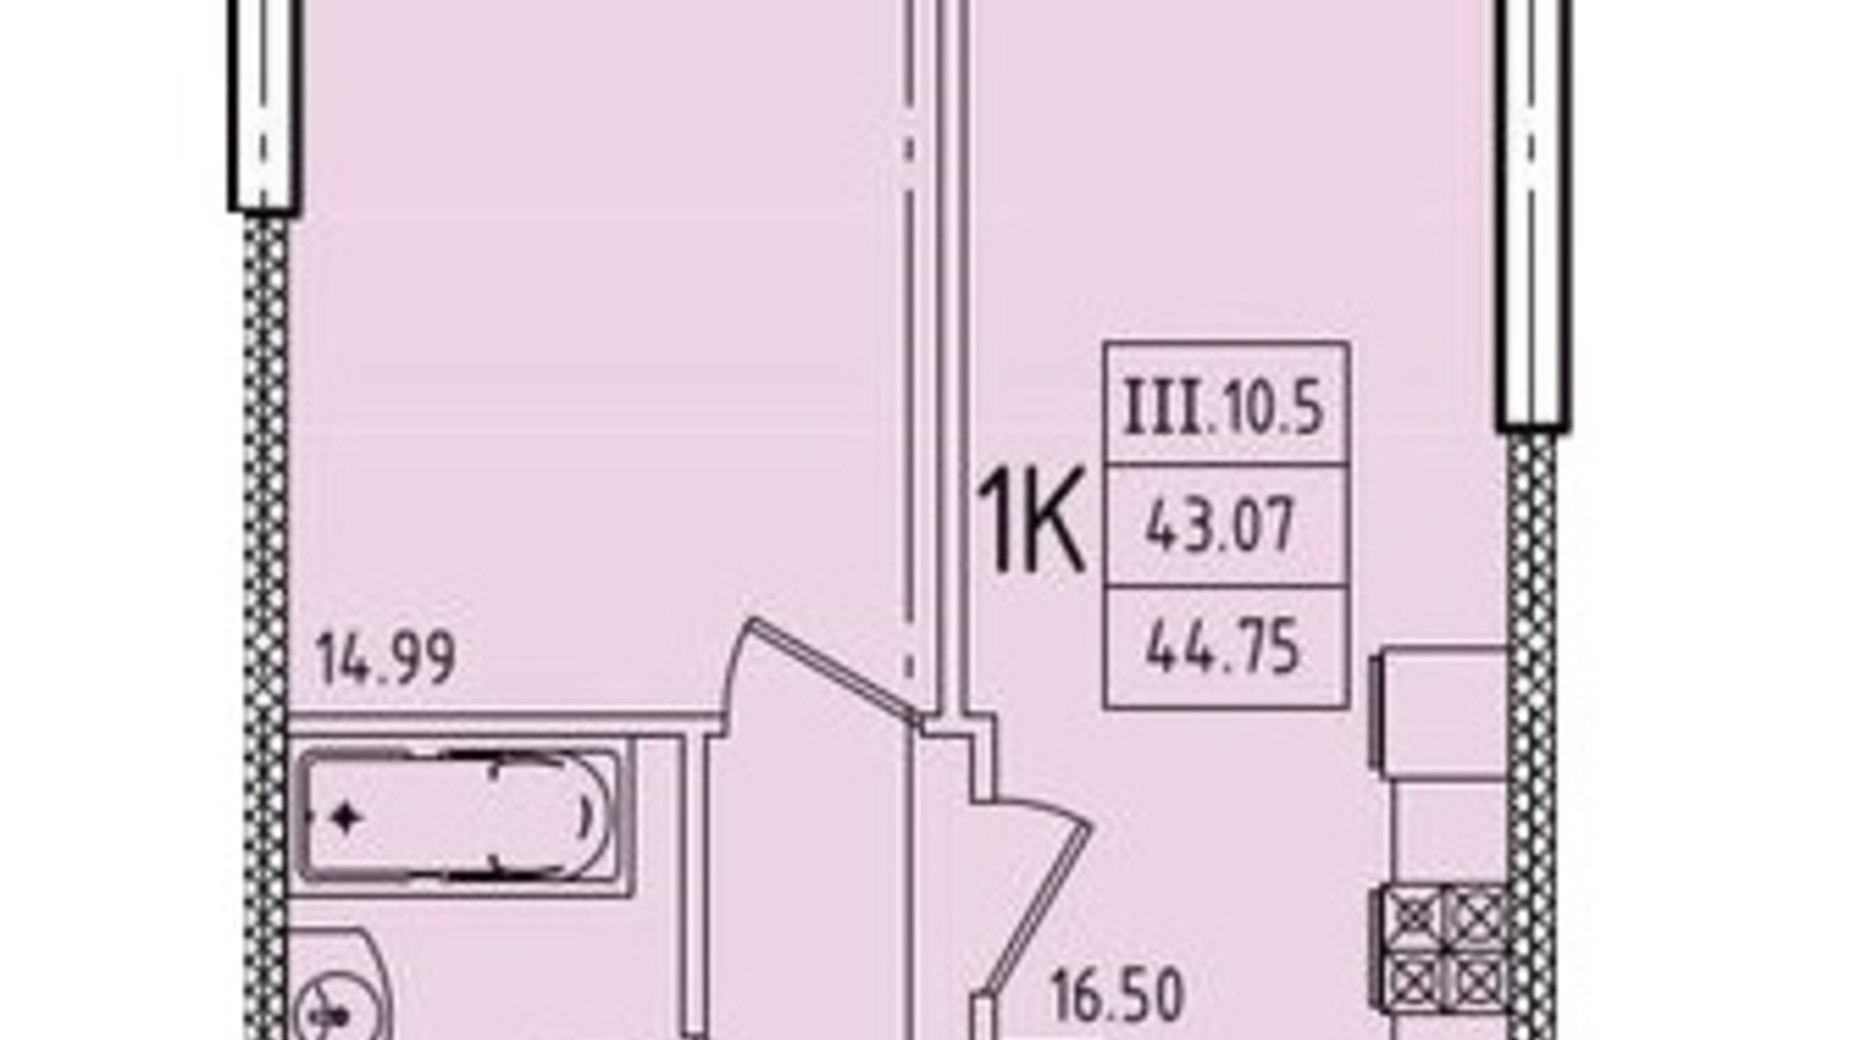 Планировка 1-комнатной квартиры в ЖК Эллада 44.75 м², фото 716134